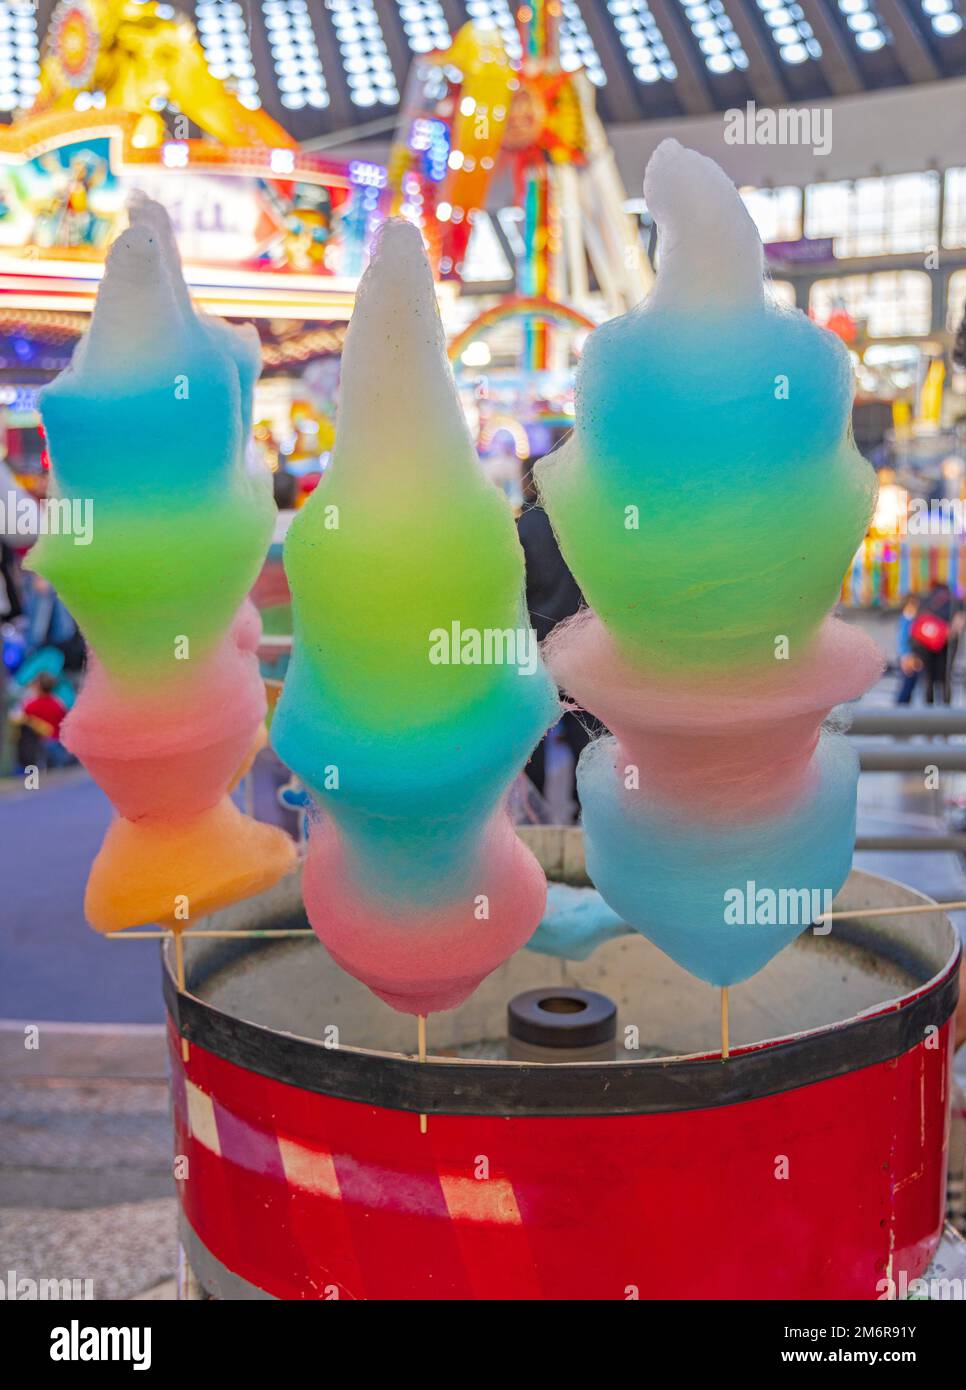 Rainbow Cotton Candy Floss Machine at Carnival Fun Fair Stock Photo